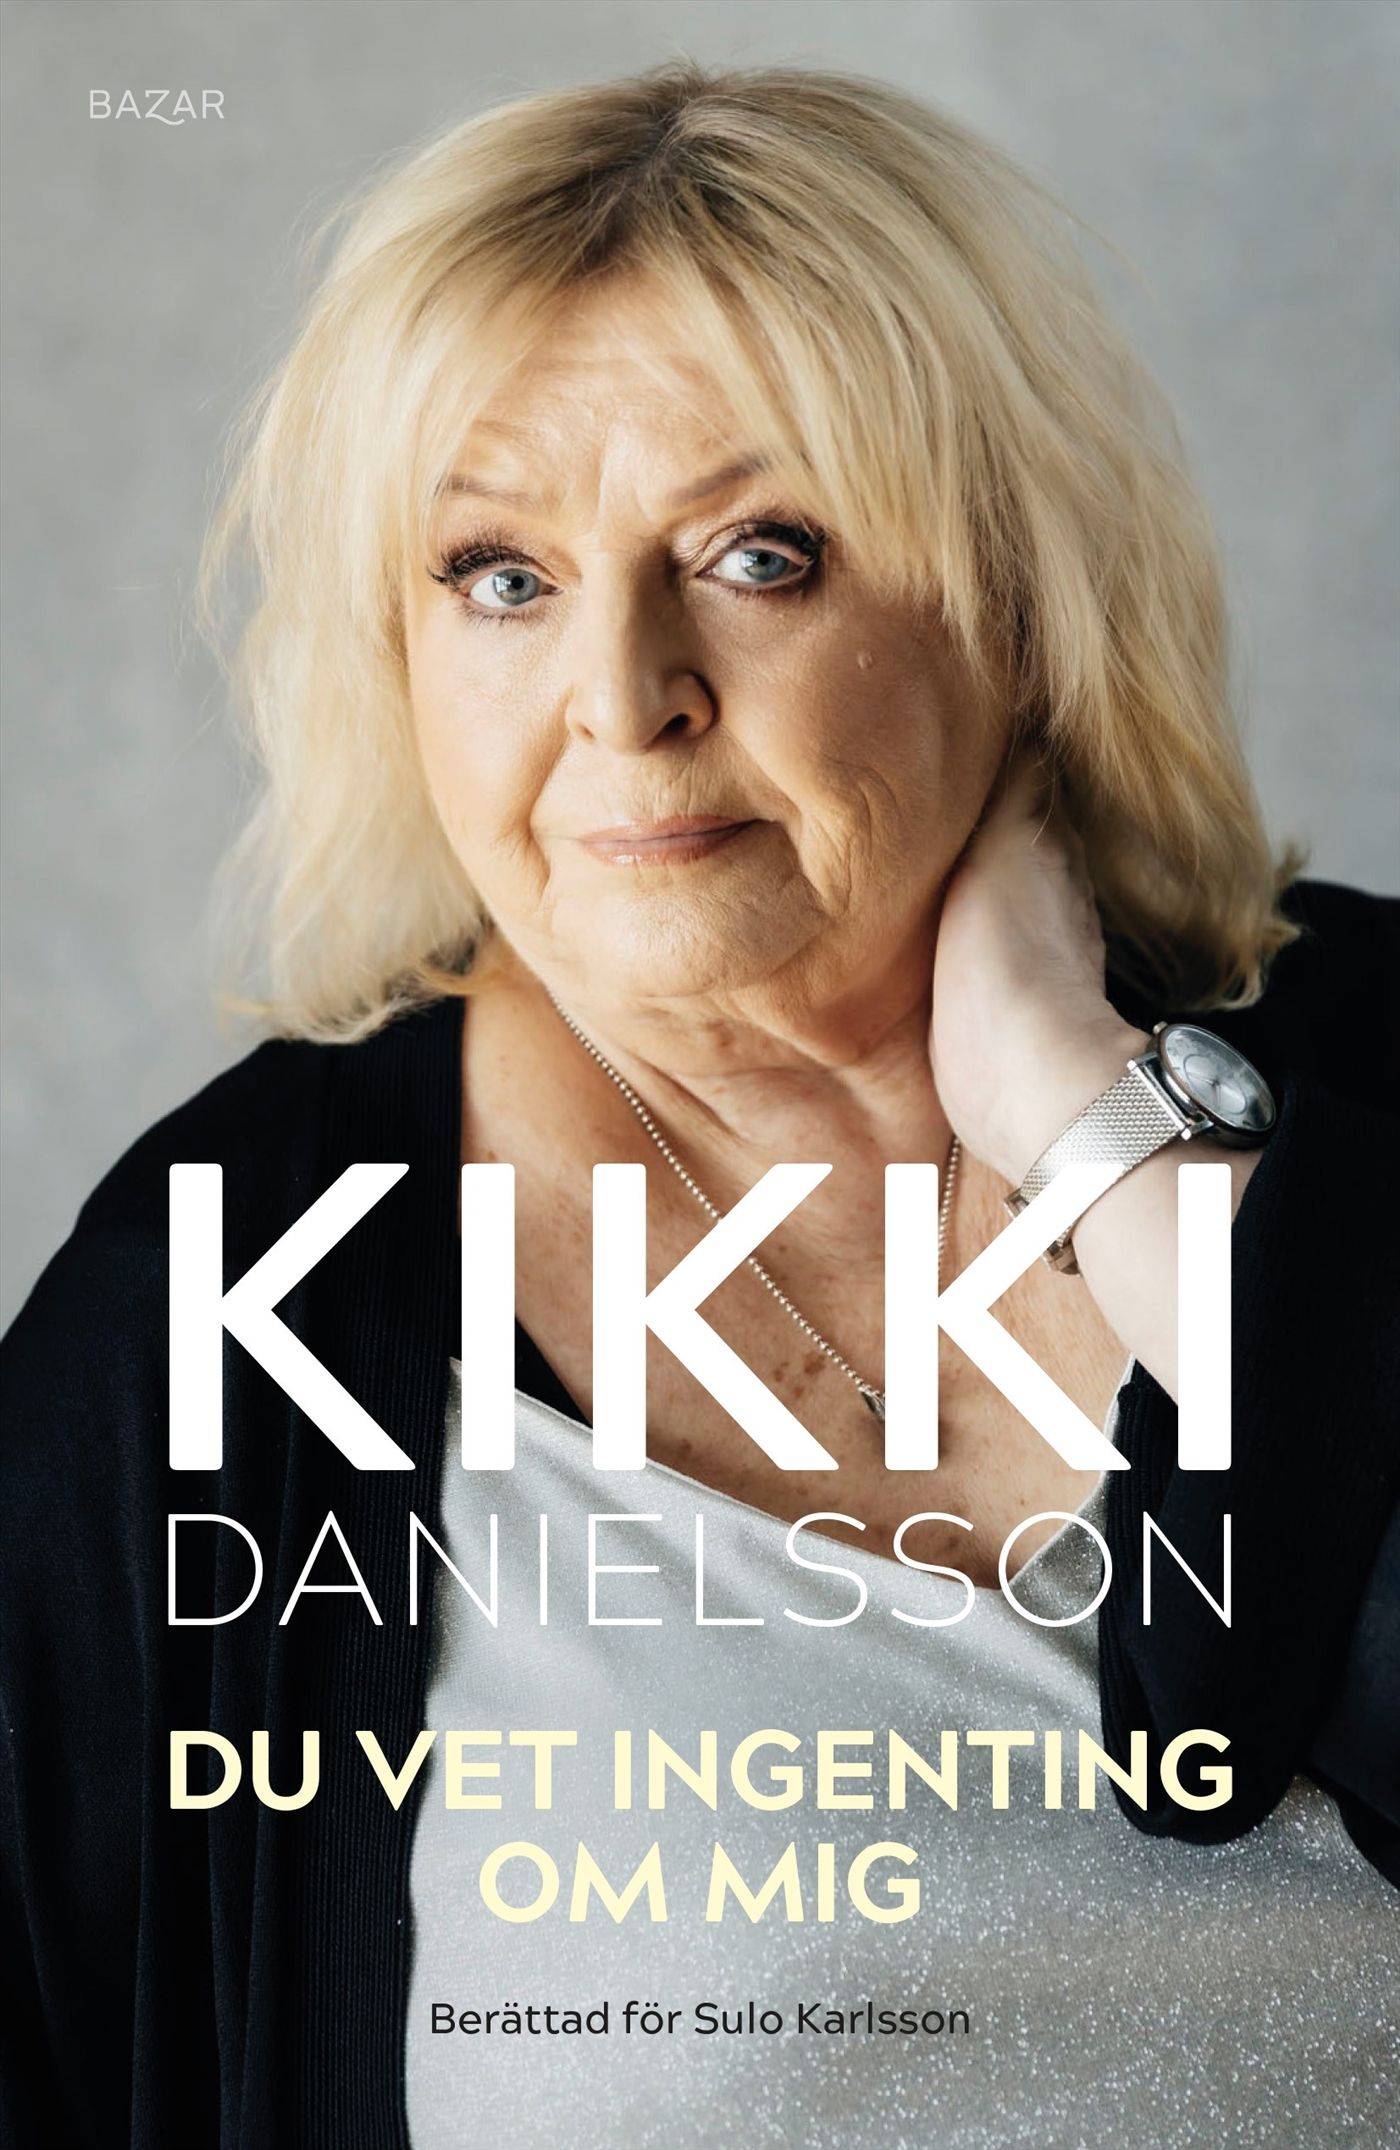 Du vet ingenting om mig, e-bok av Kikki Danielsson, Sören "Sulo" Karlsson